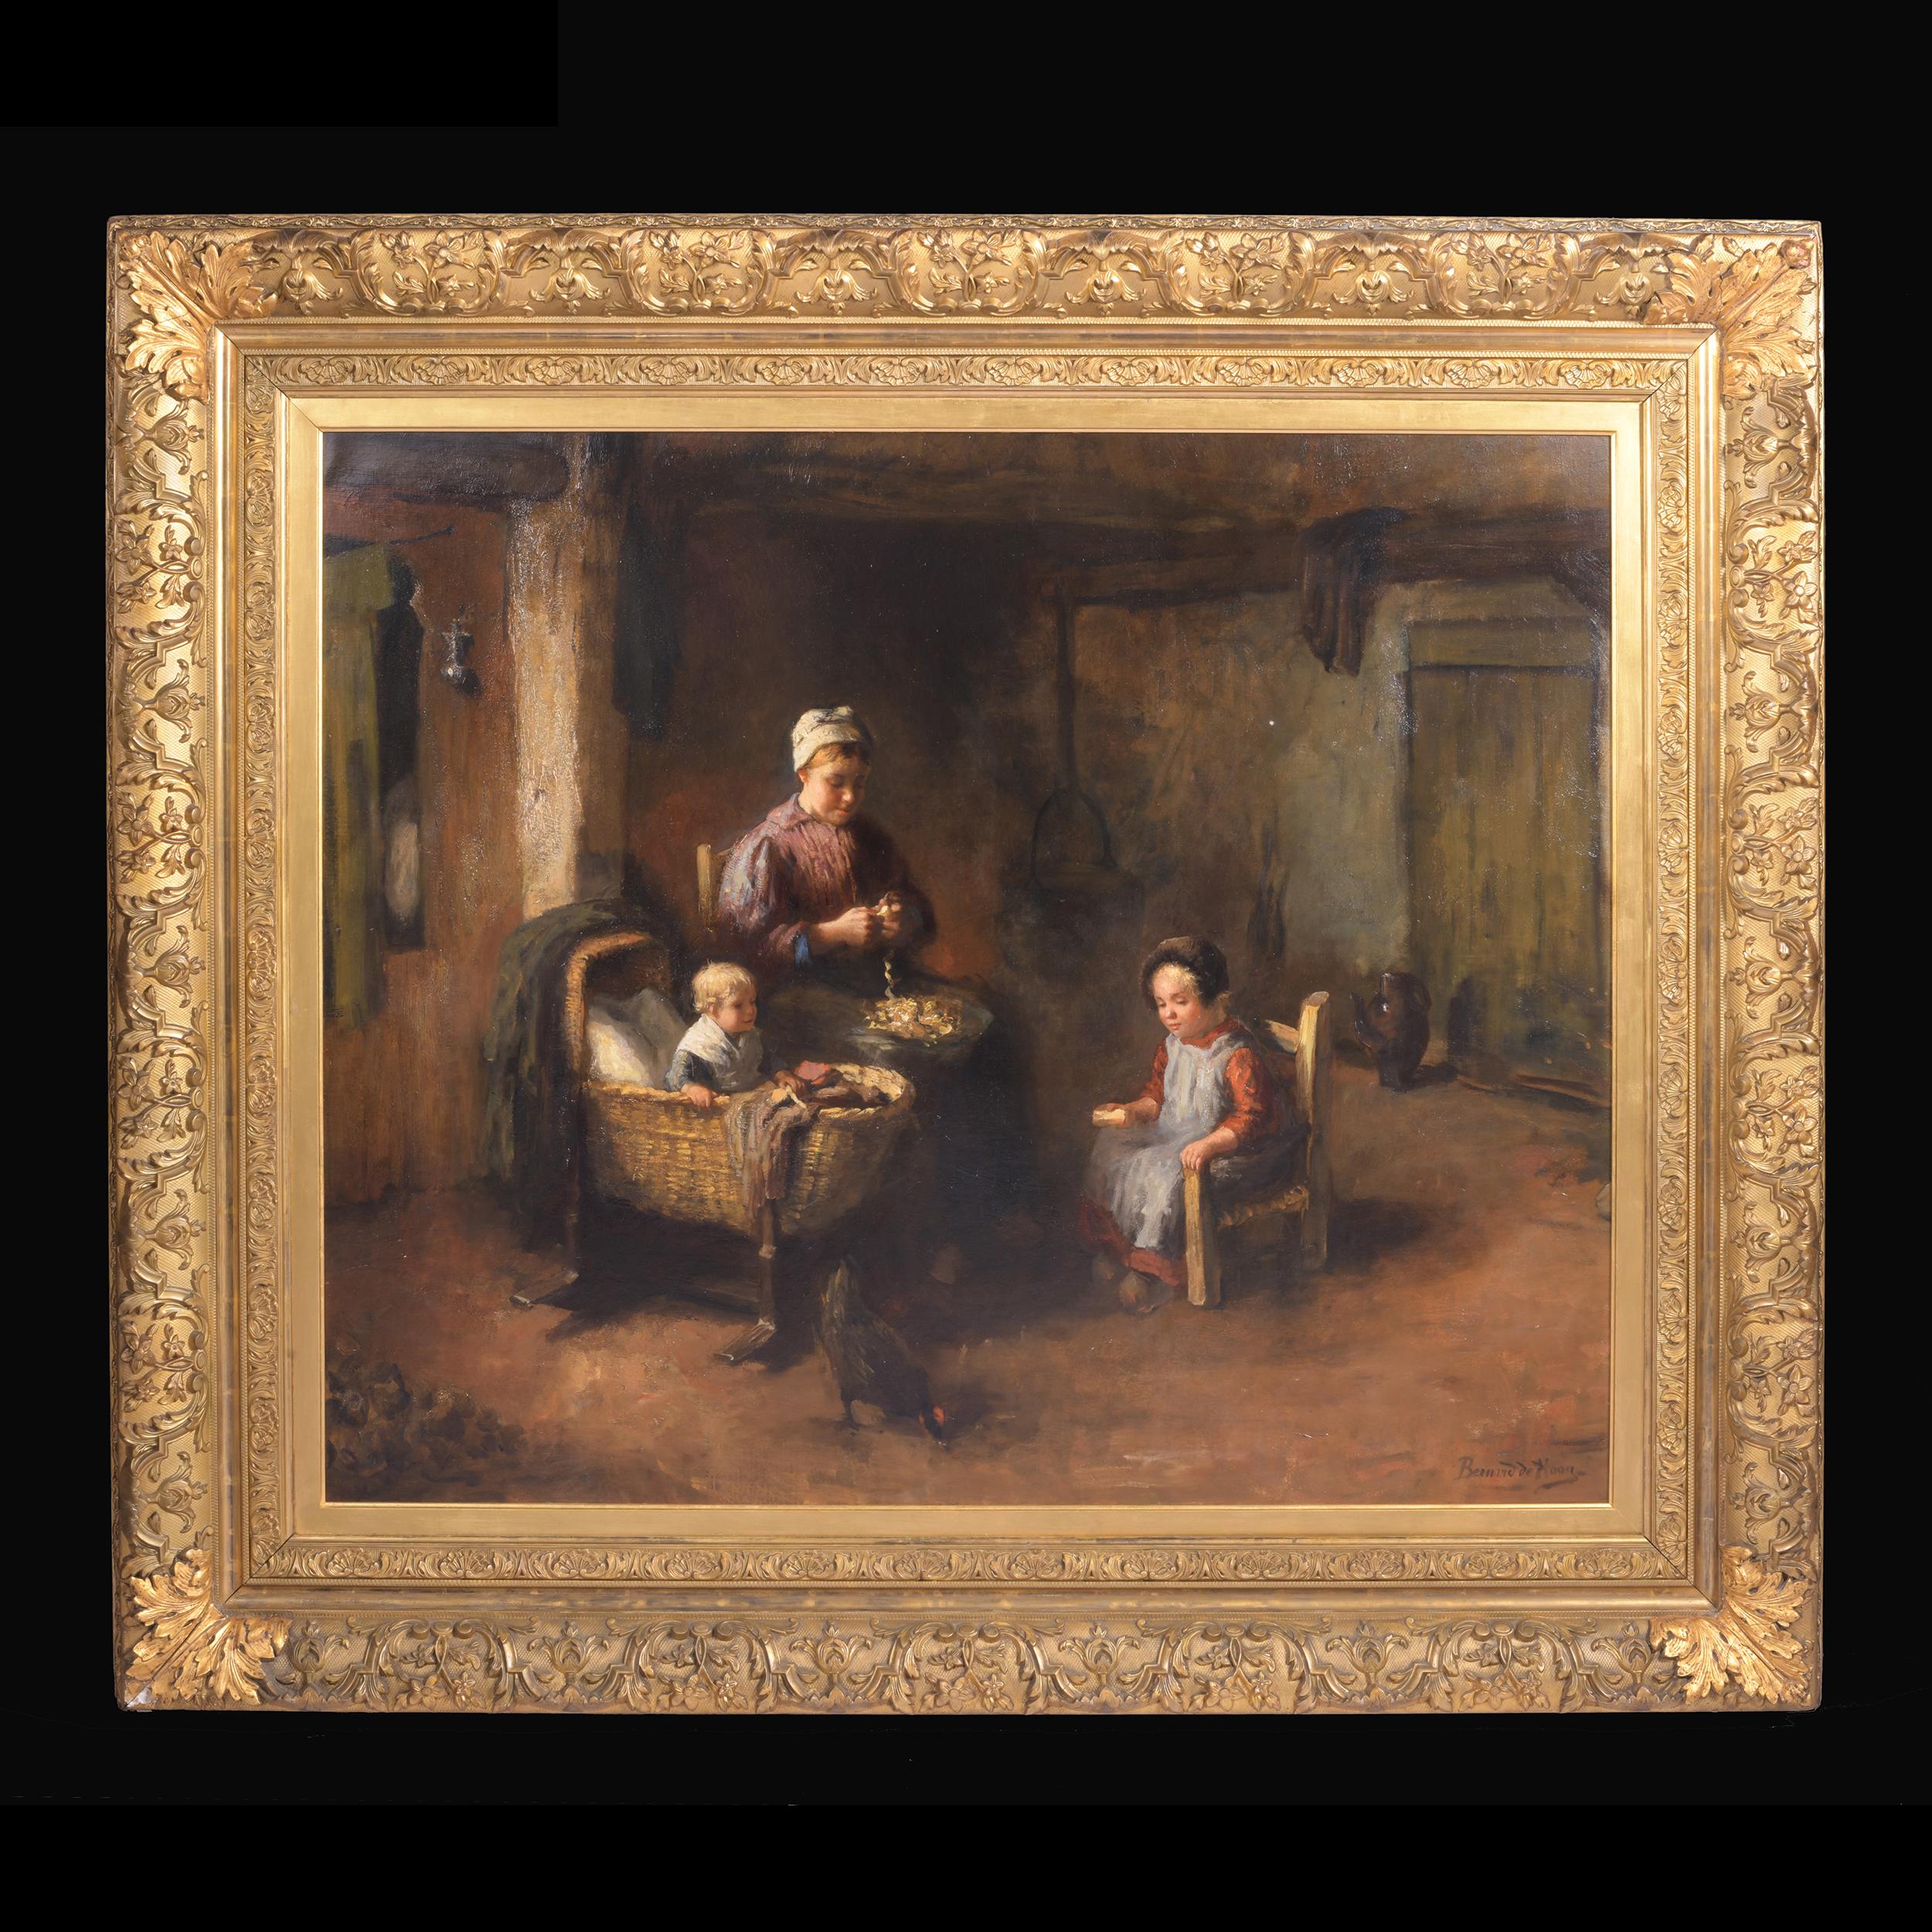 Künstler: Bernard de Hoog (1826-1943), Niederländer

Titel: Mutter füttert ihr Kind in einer Küche

Signiert: Rechts unten

Medium: Öl auf Leinwand. In vergoldetem Originalrahmen.

Dimension:

H: 39 in / 100 cm
B: 119,2 cm (46,929